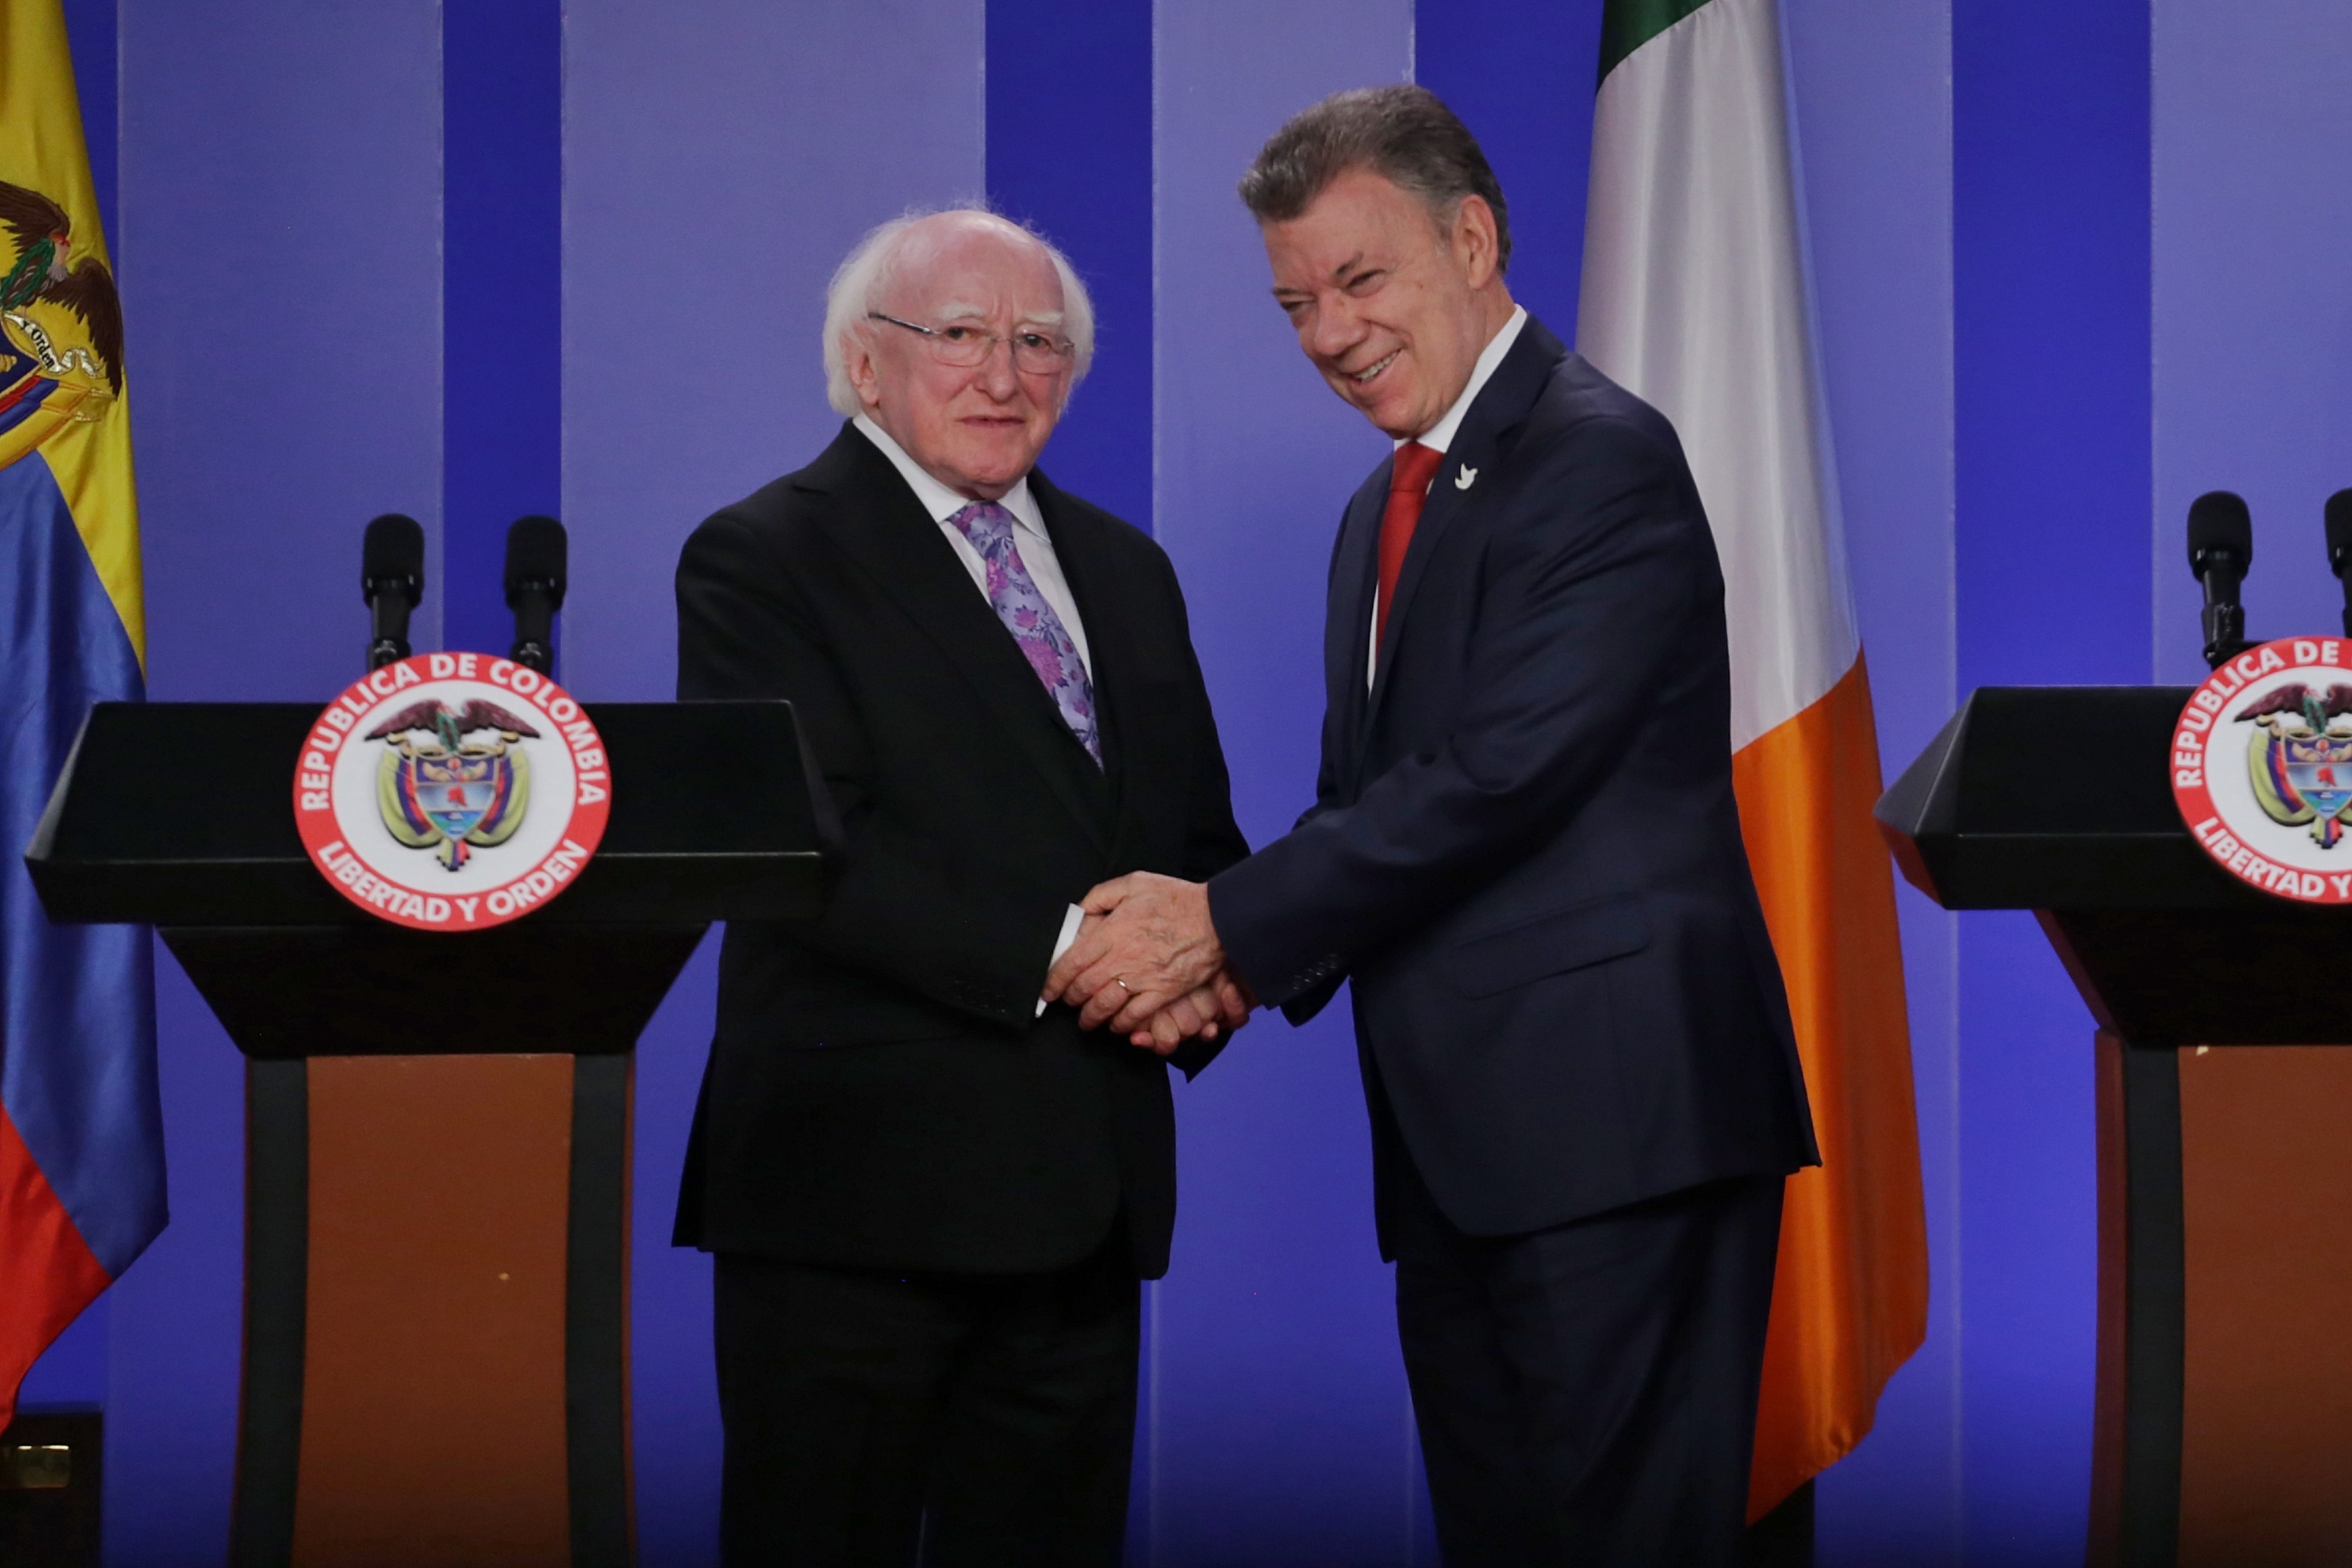 Se publicó la nota: Estamos felices de contribuir en su travesía hacia la paz y la reconciliación: Presidente de Irlanda